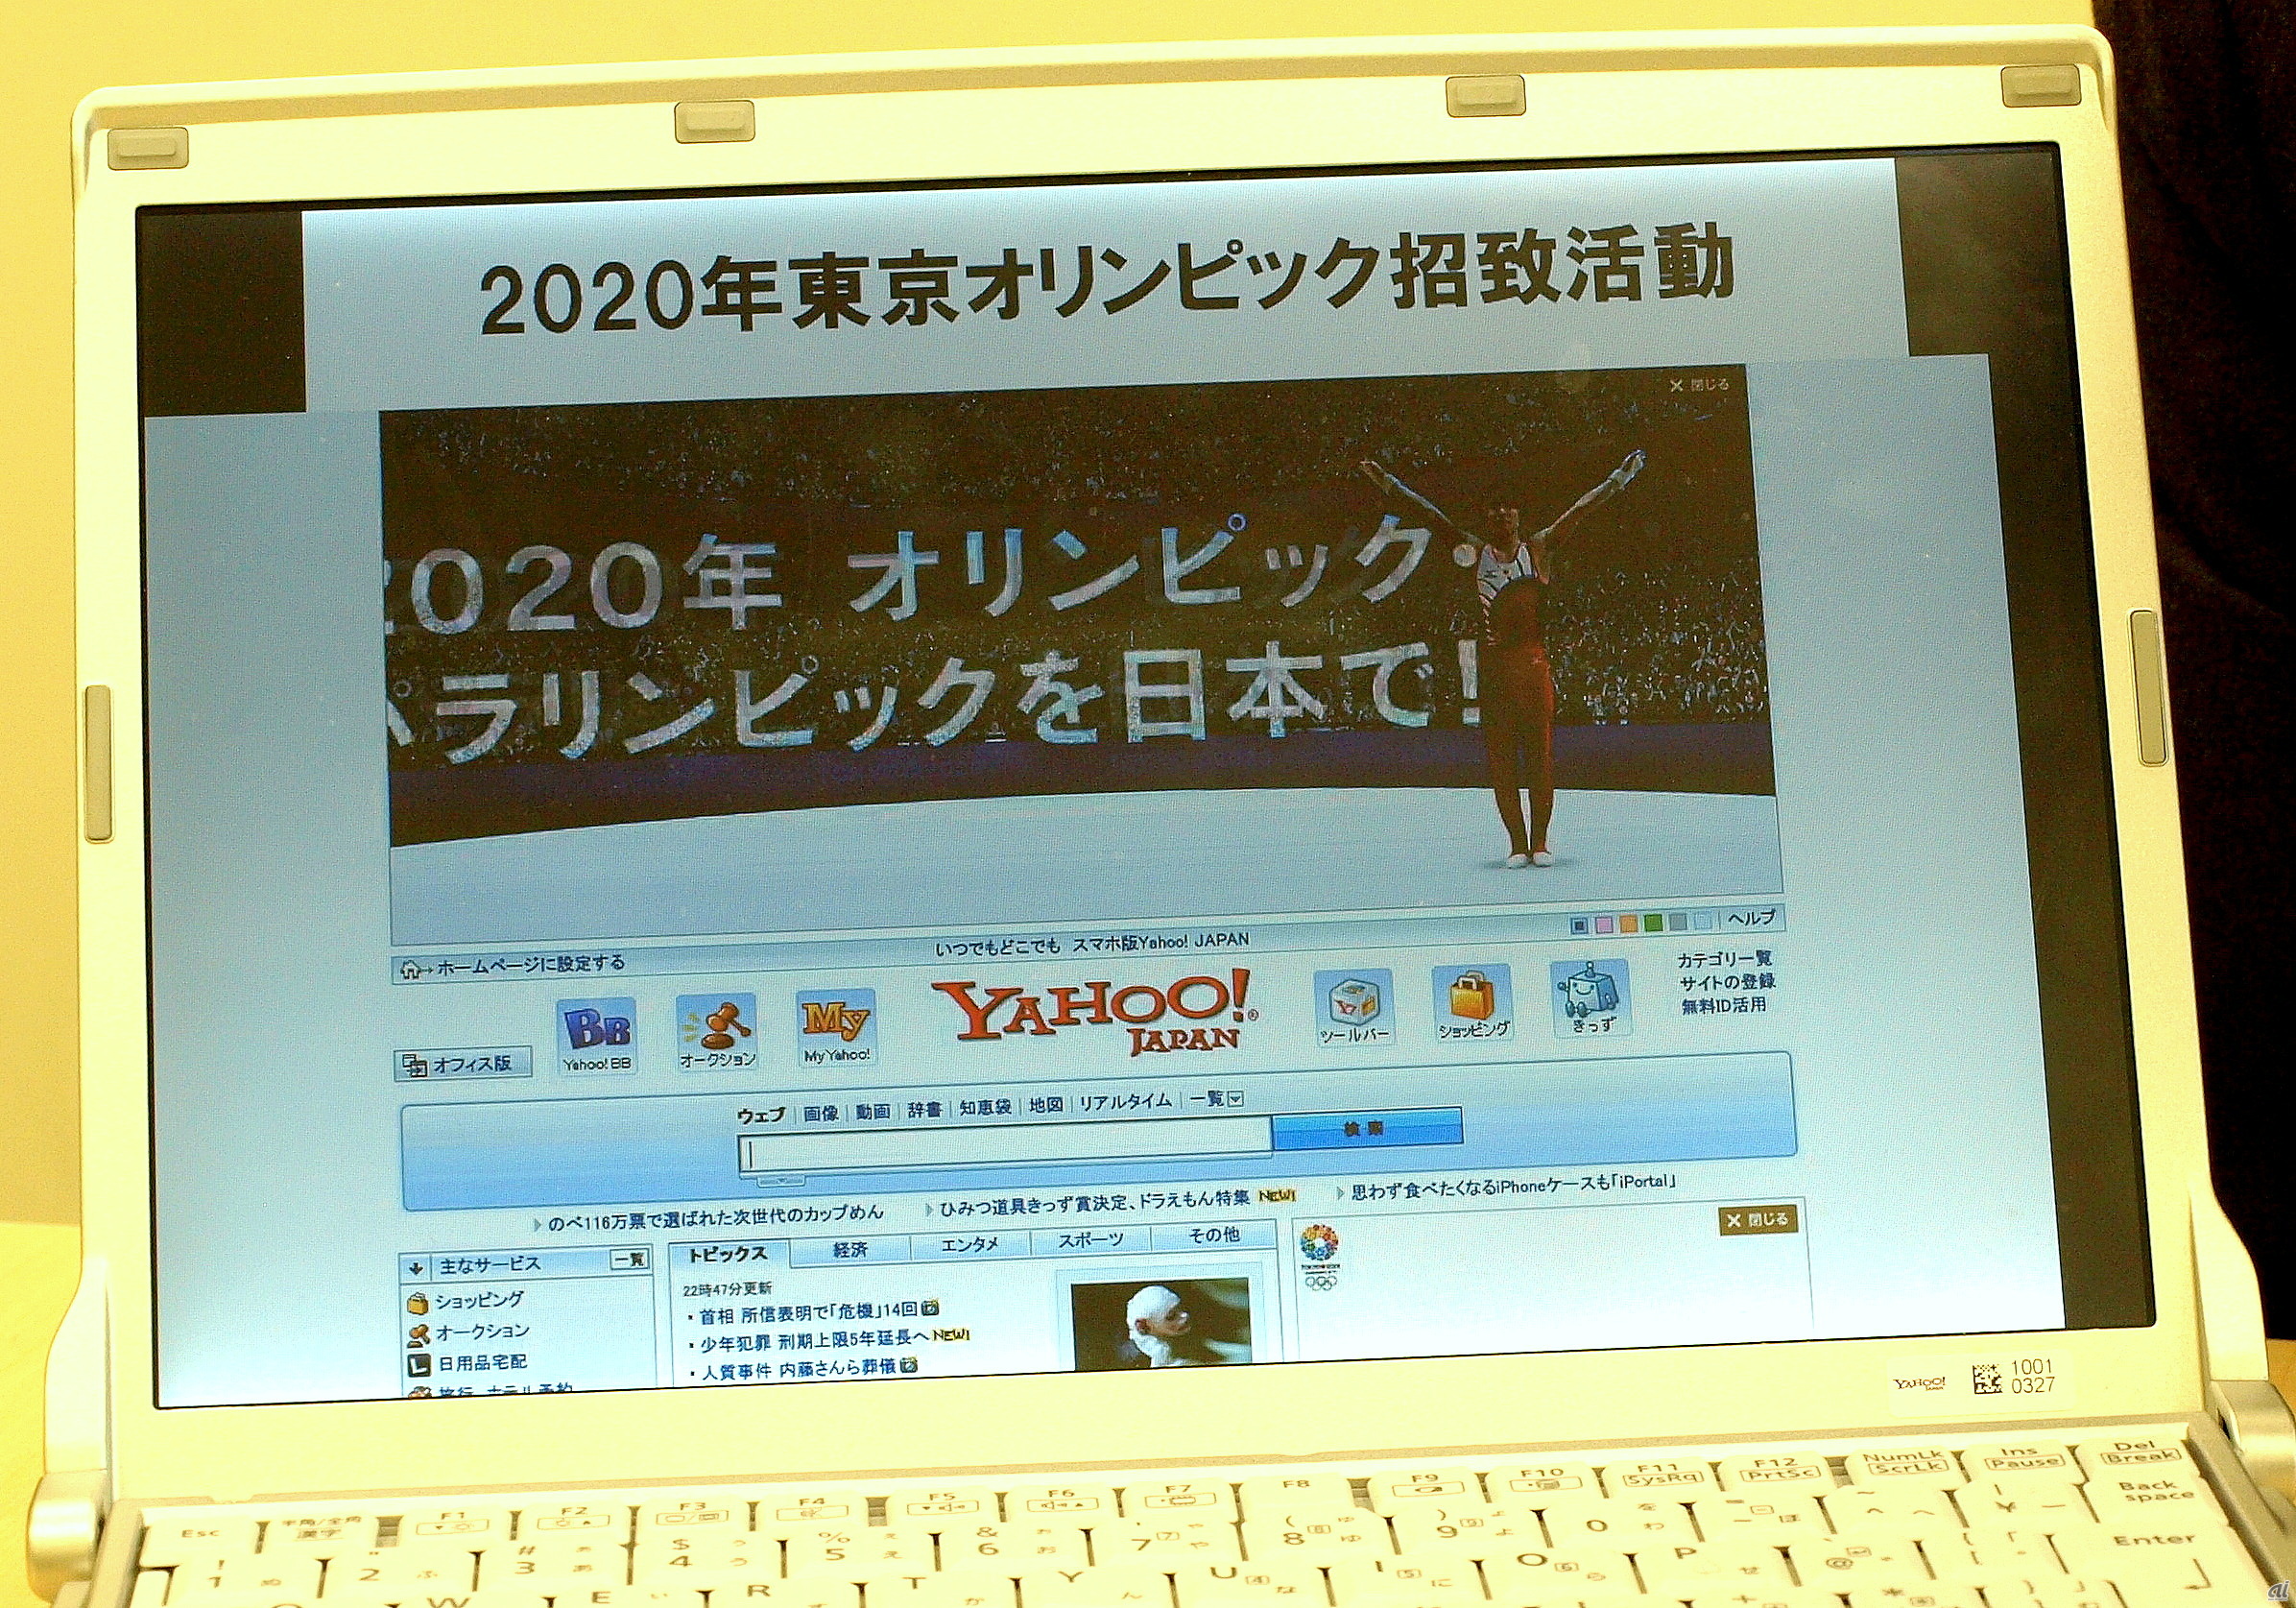 着地すると「2020年、オリンピック・パラリンピックを東京で」という大きなロゴが出現した